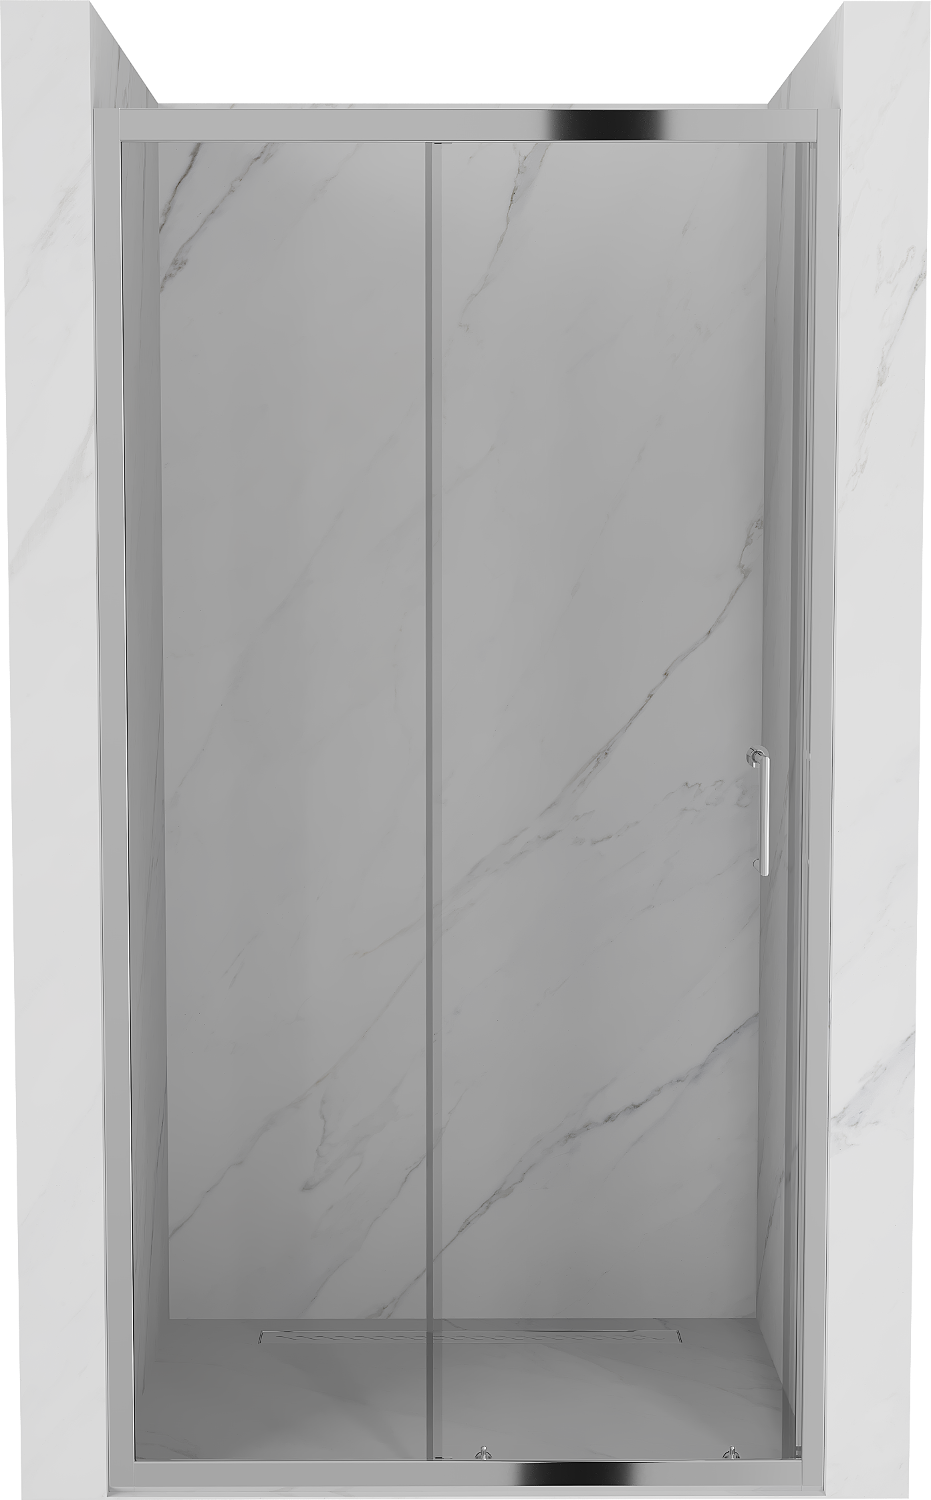 Mexen Apia drzwi prysznicowe rozsuwane 105 cm, transparent, chrom - 845-105-000-01-00